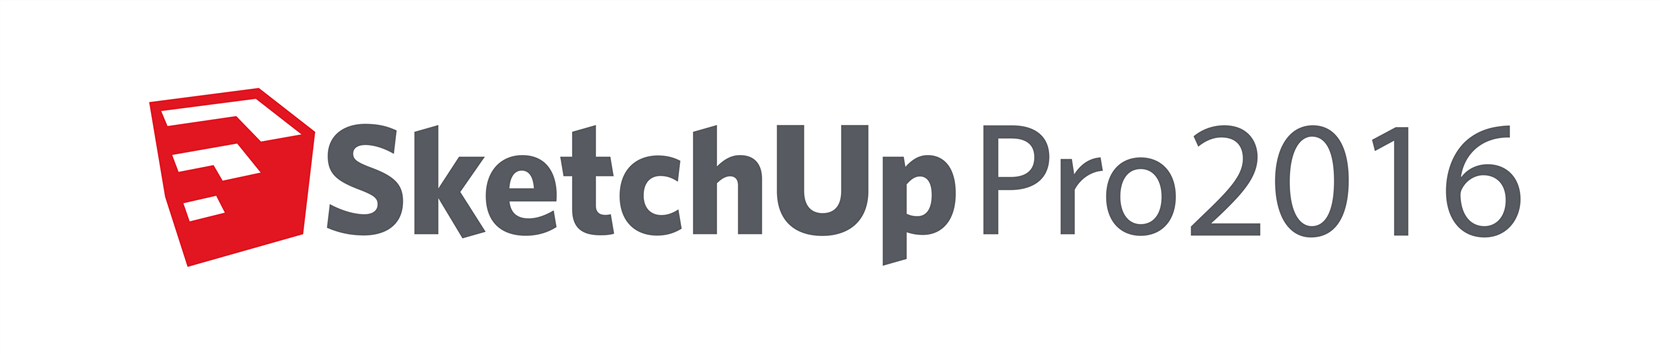 Sketchup Logo Vector